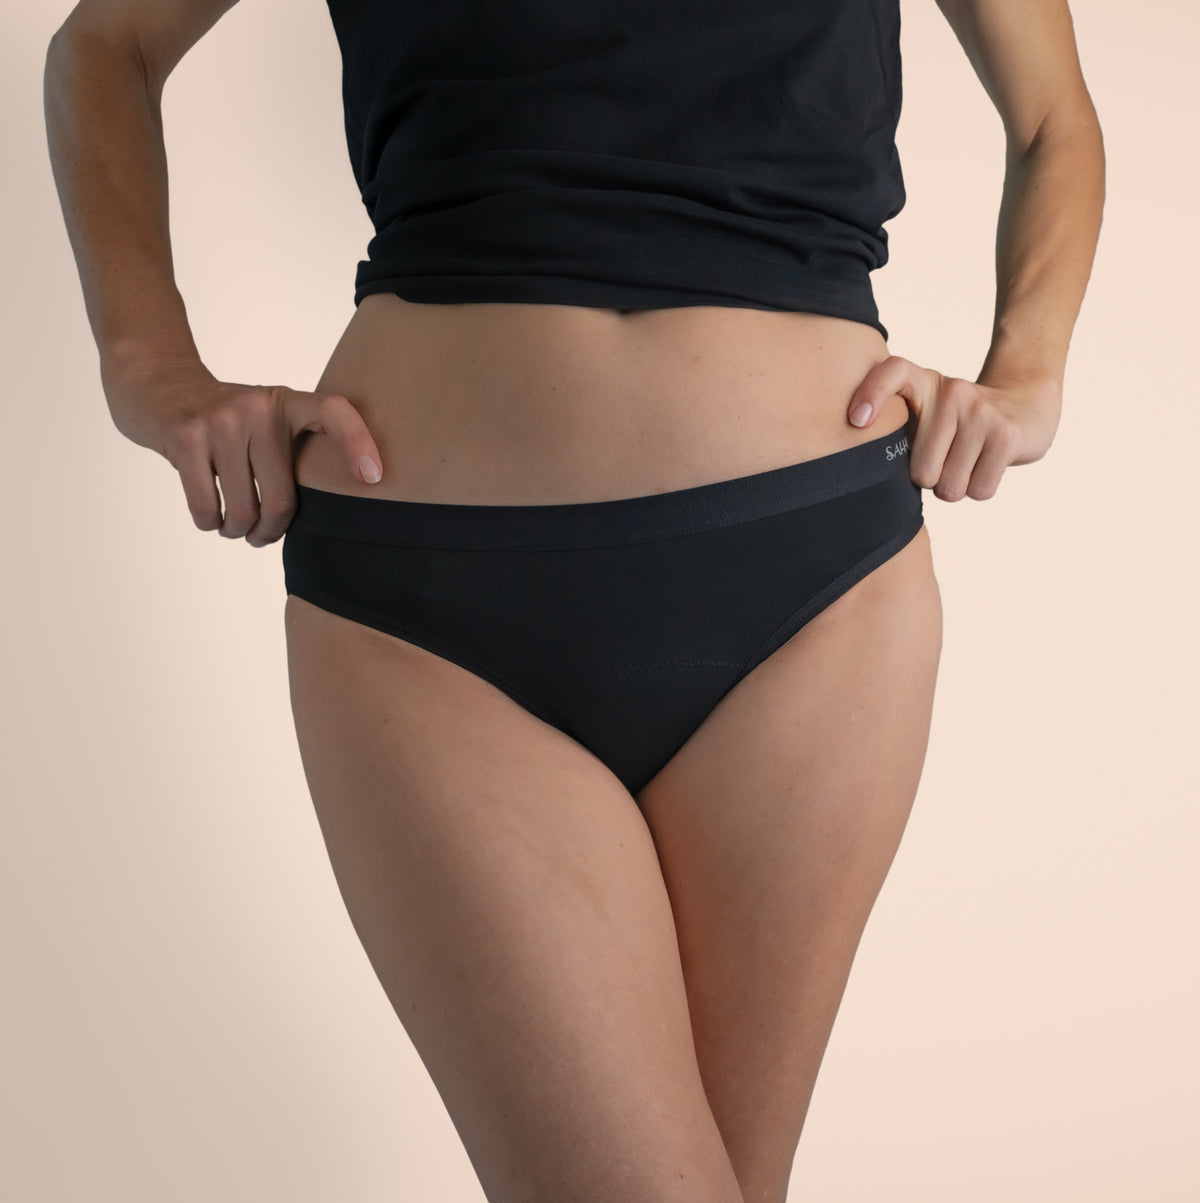 Bikini Period Underwear for Women (Heavy Absorbency)